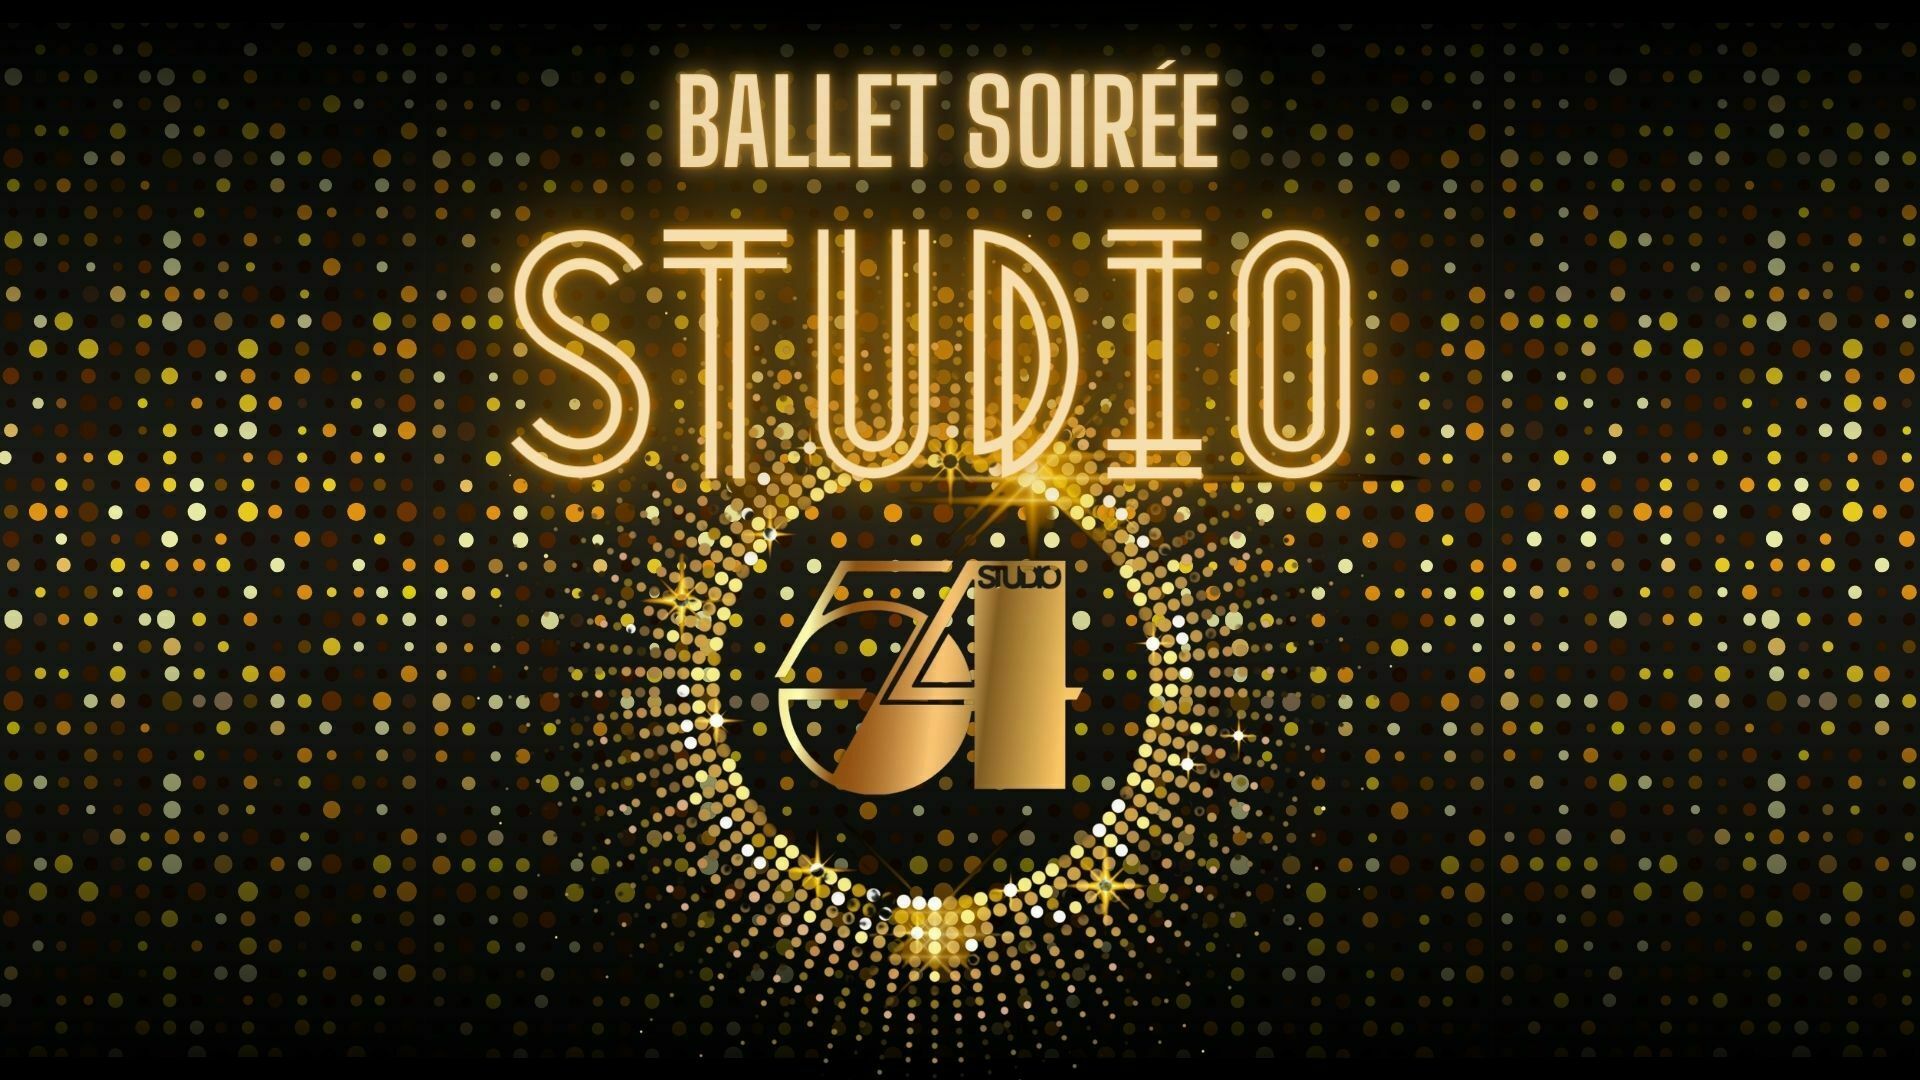 Rochester City Ballet's Annual Soirée: Studio 54, Rochester, New York, United States